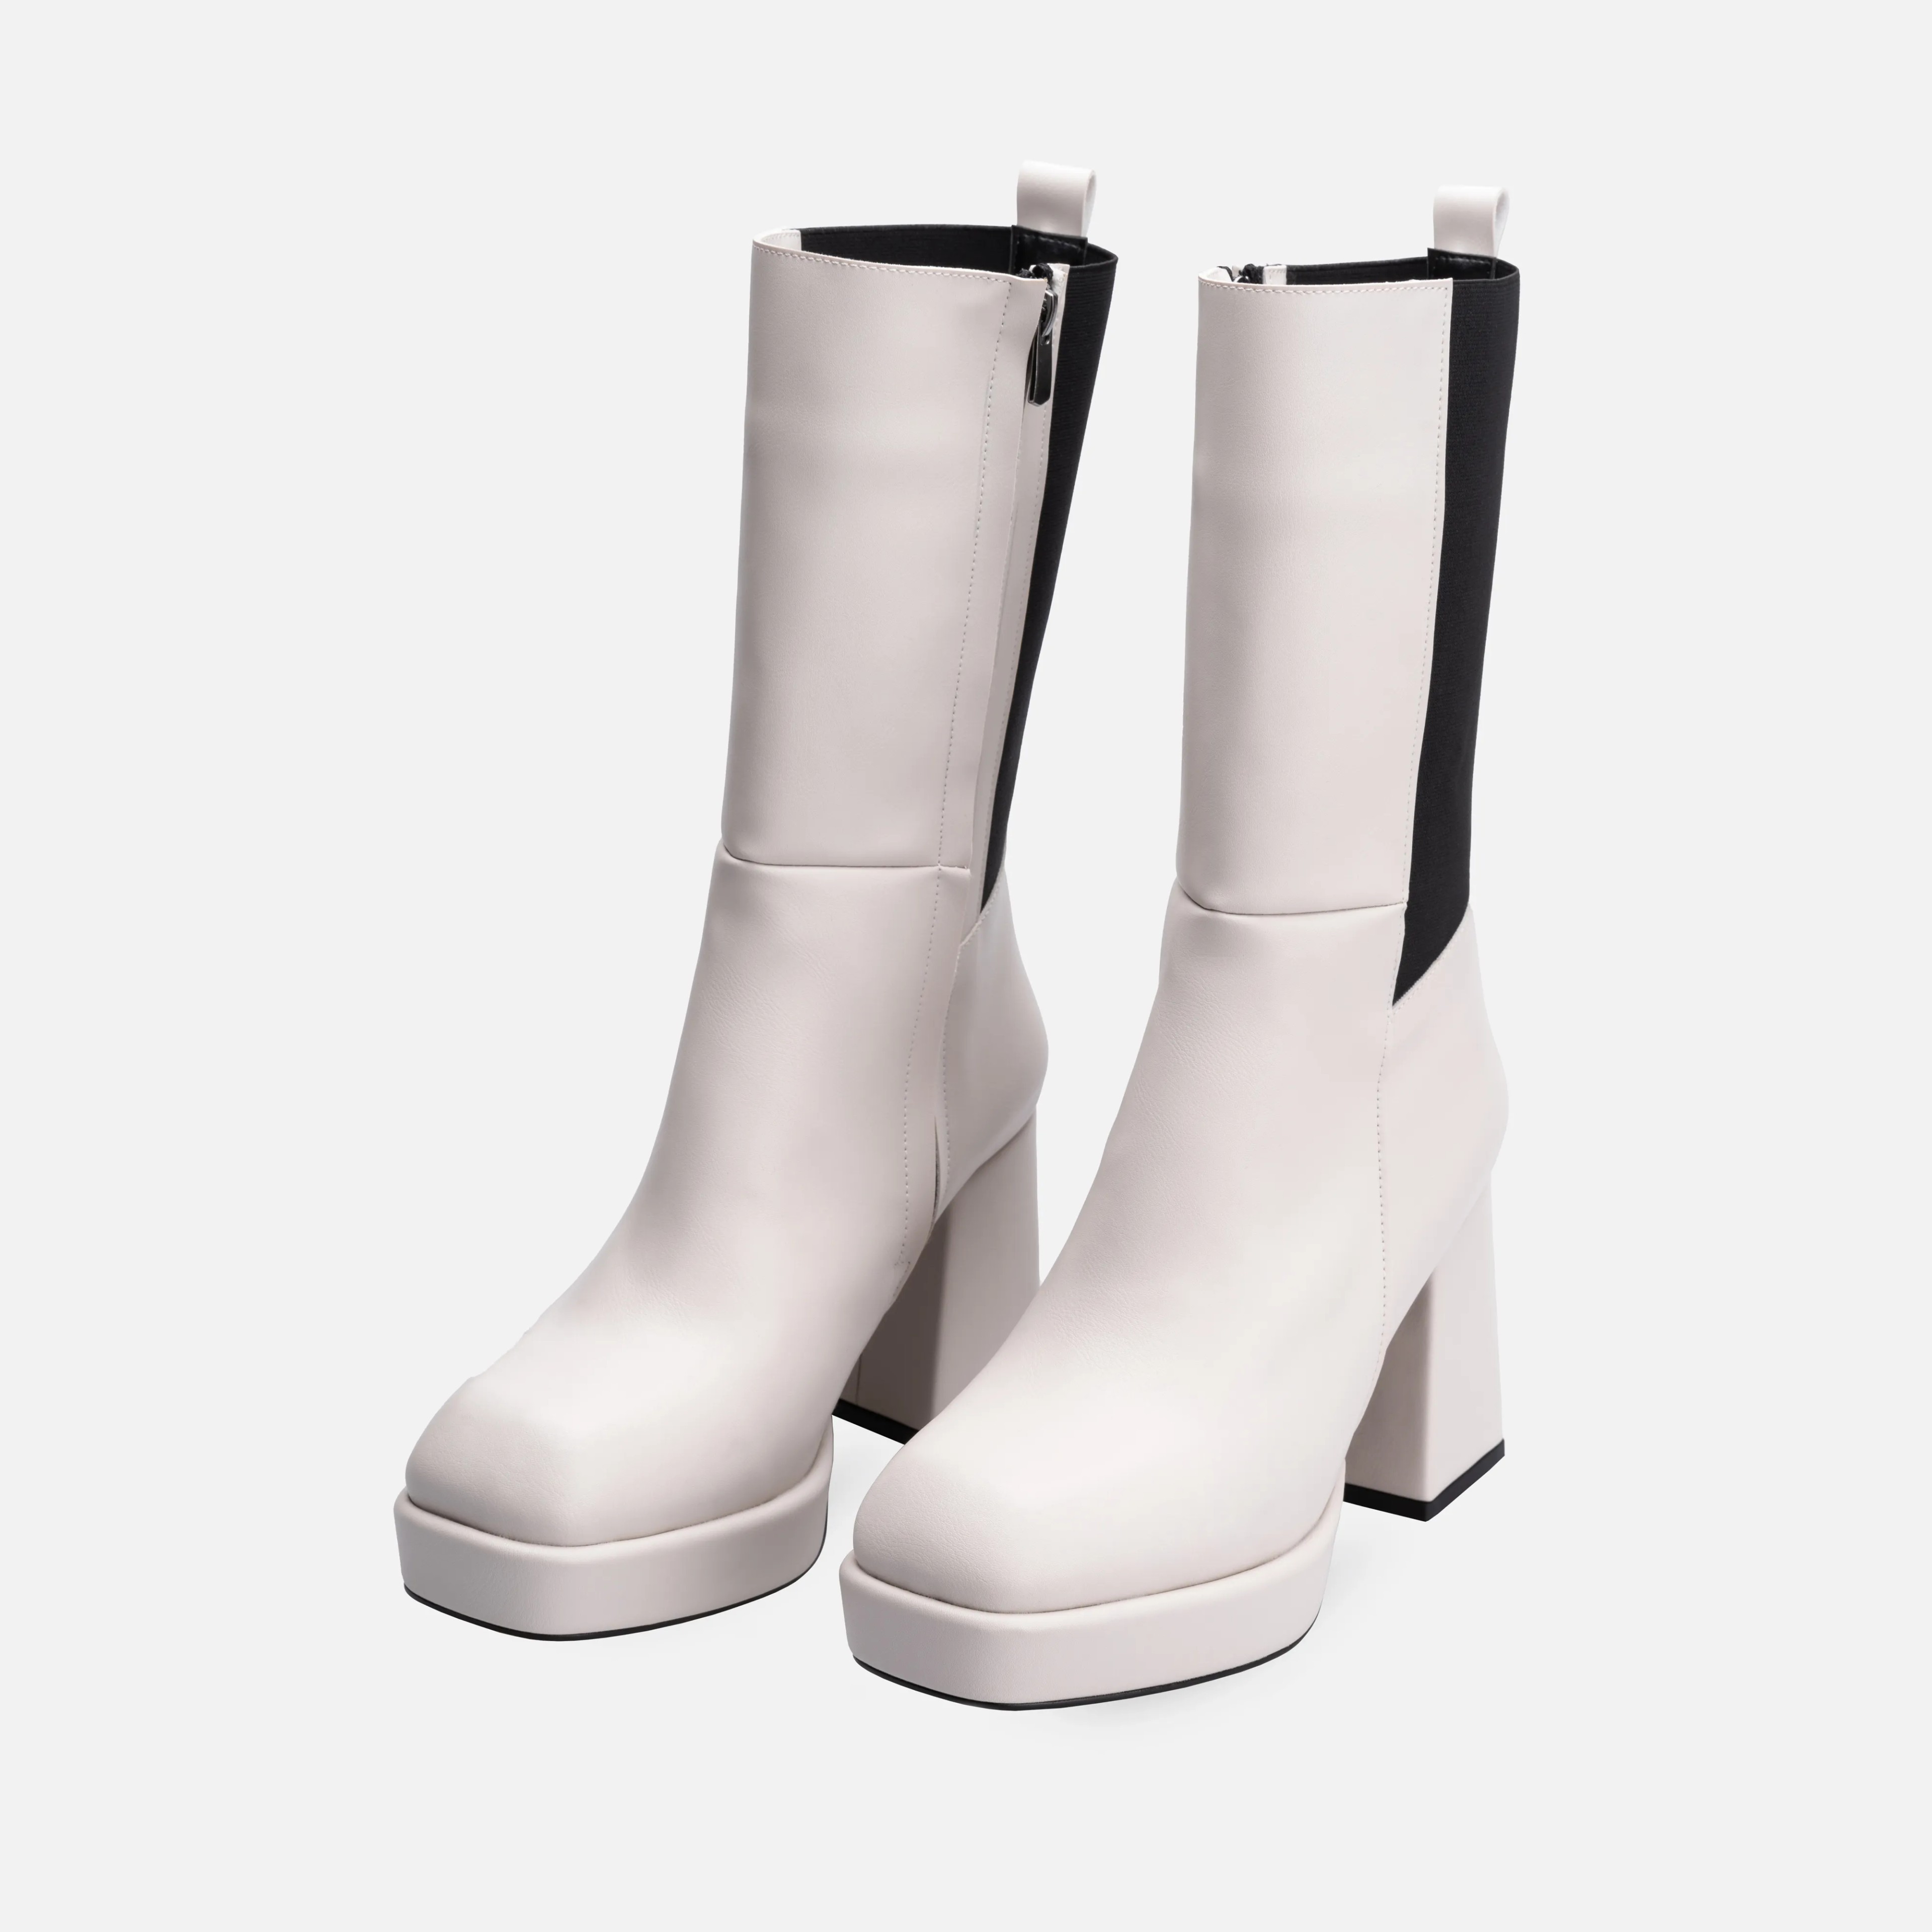 Veronica Lastikli Platform Topuklu Çizme Kırık Beyaz